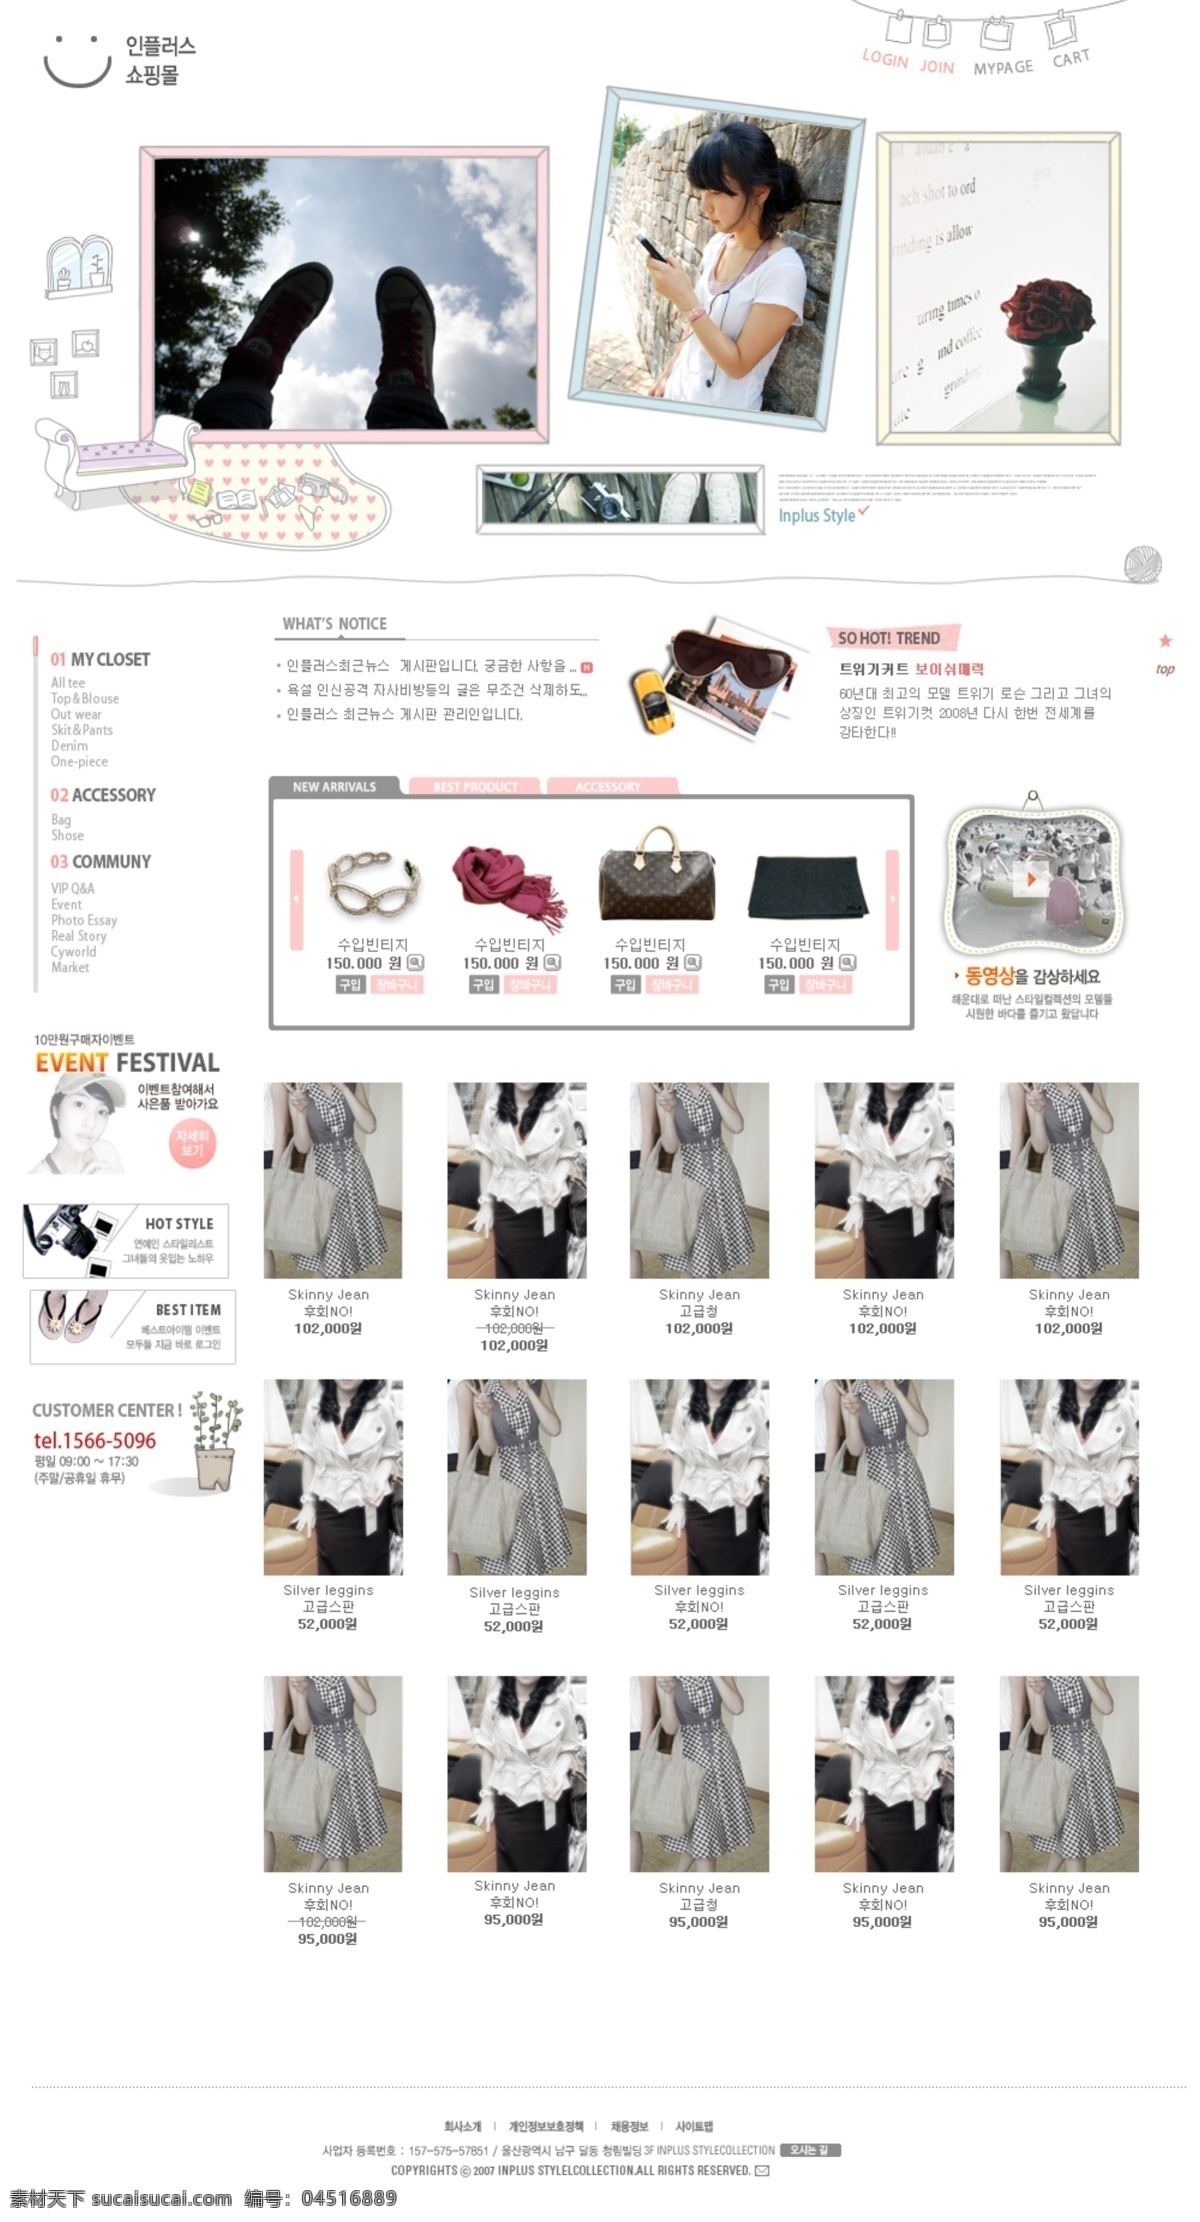 简洁 可爱 服饰 商城 网页模板 韩国风格 女生 服饰商城 网页素材